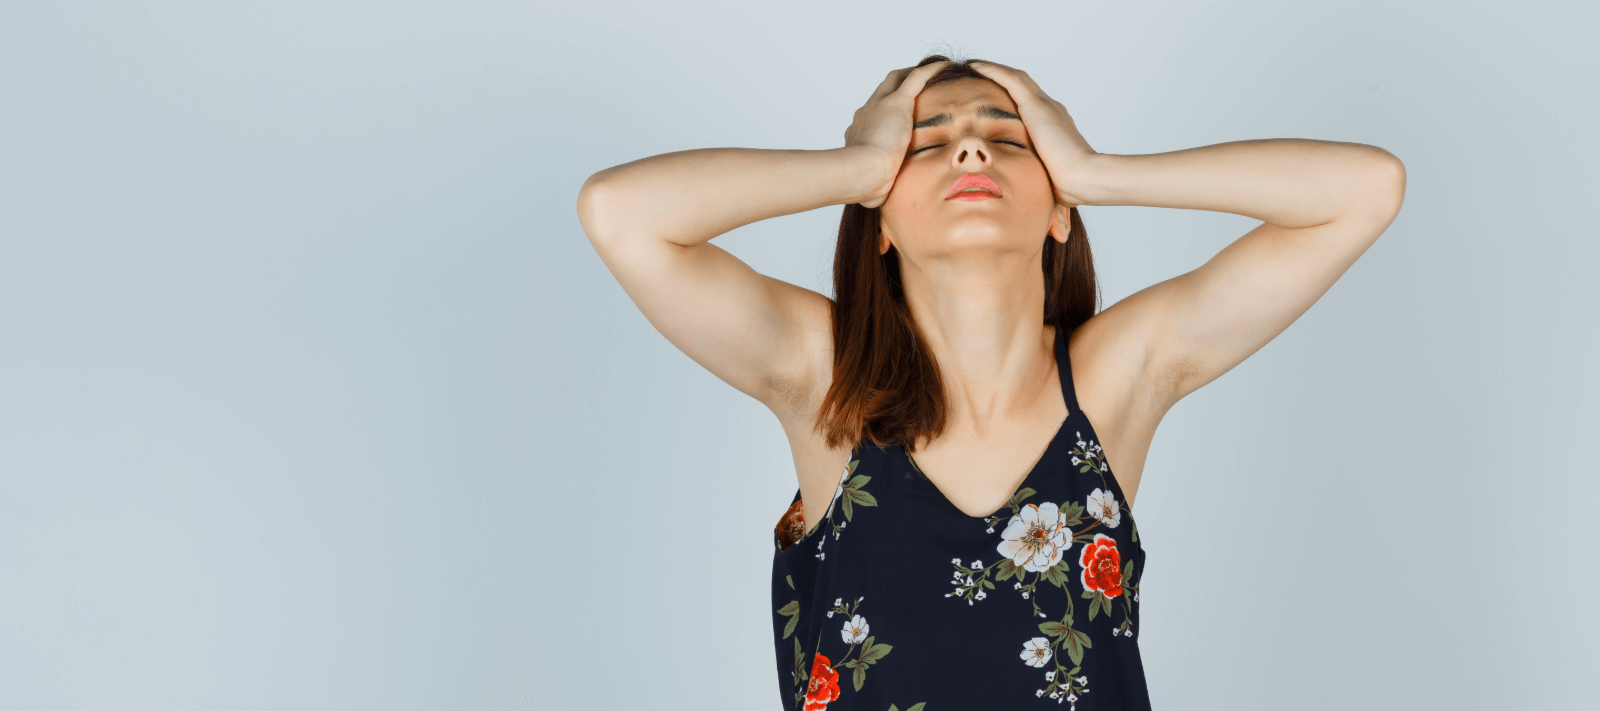 Anxiety, Tension Headaches and "Head Pressure" Sensation